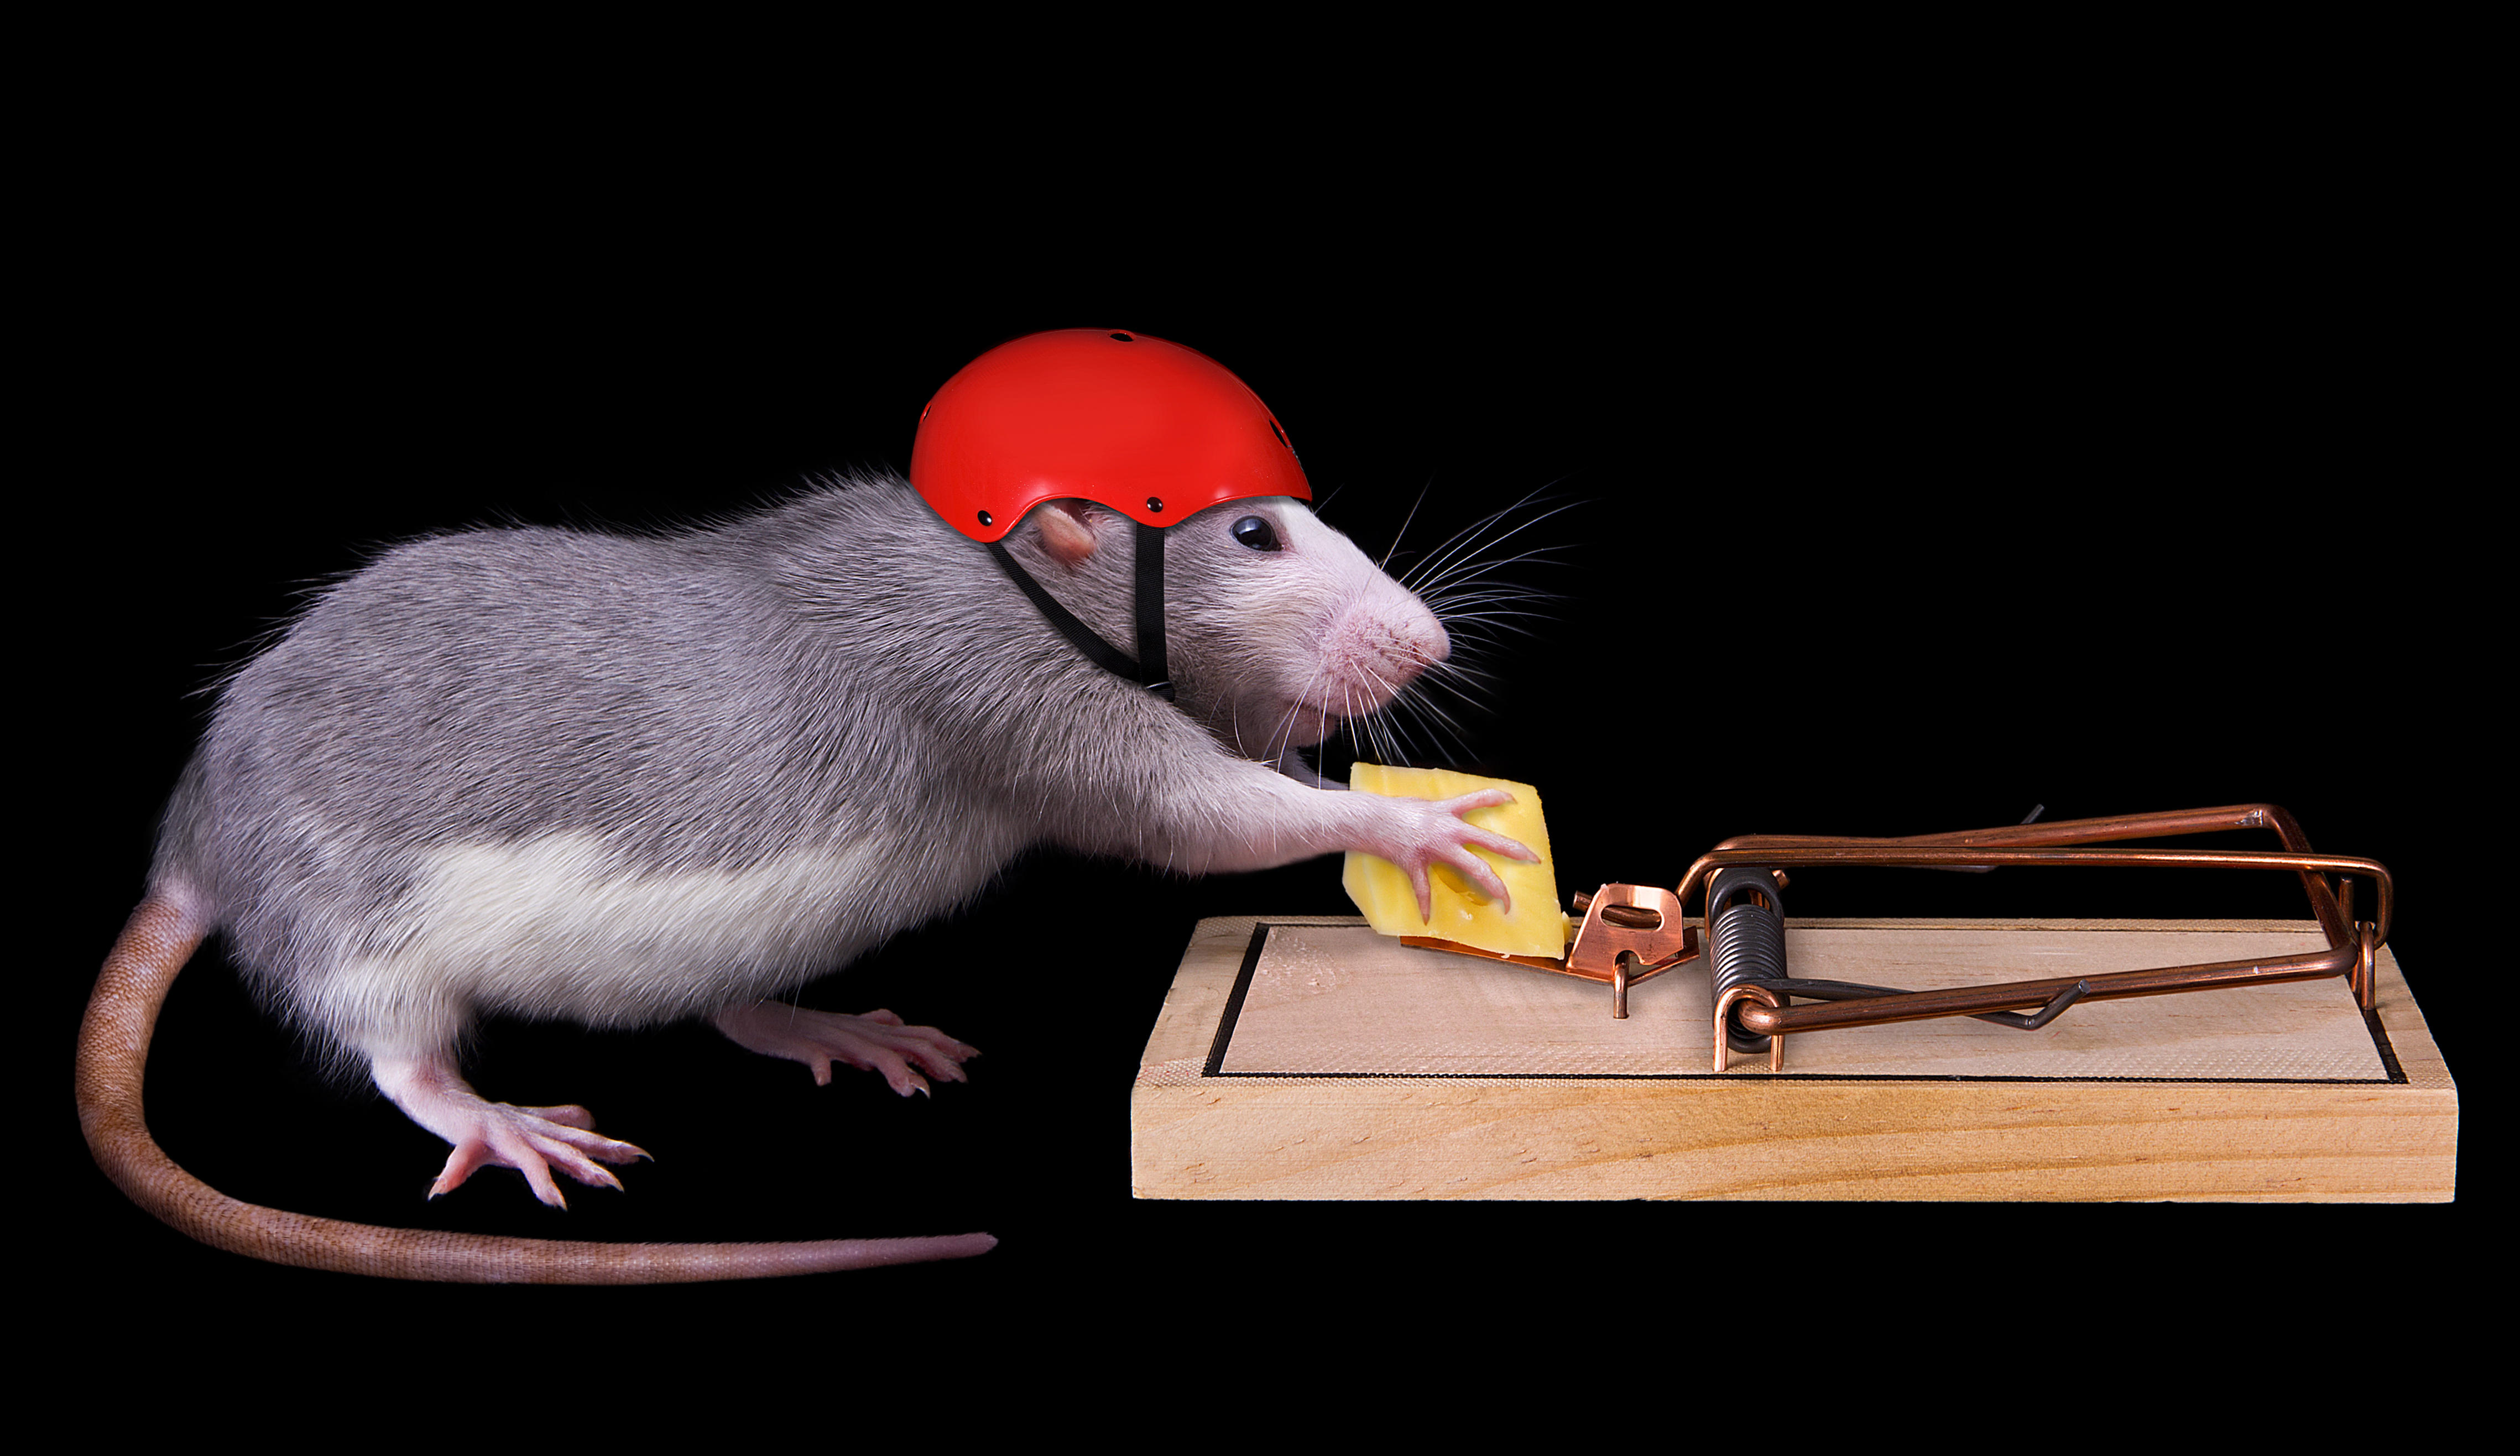 Wallpapers rat cheese humor on the desktop